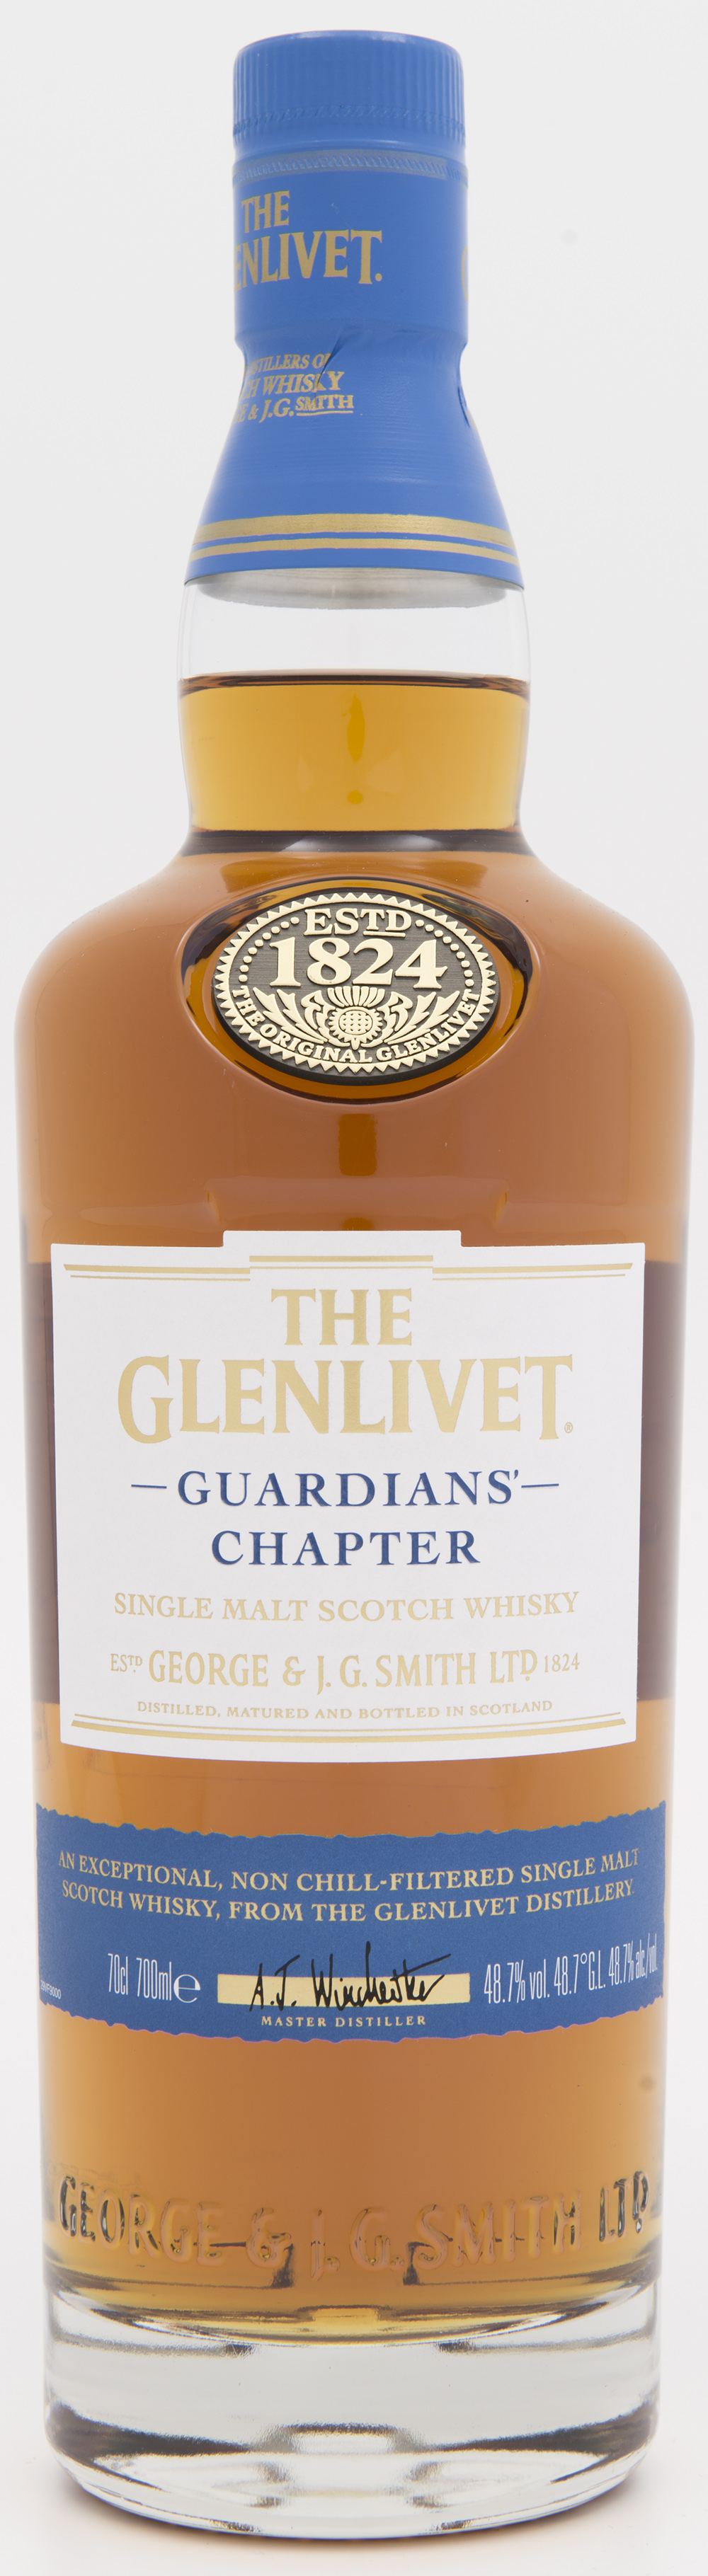 Billede: DSC_4795 The Glenlivet Guardians Chapter - bottle front.jpg